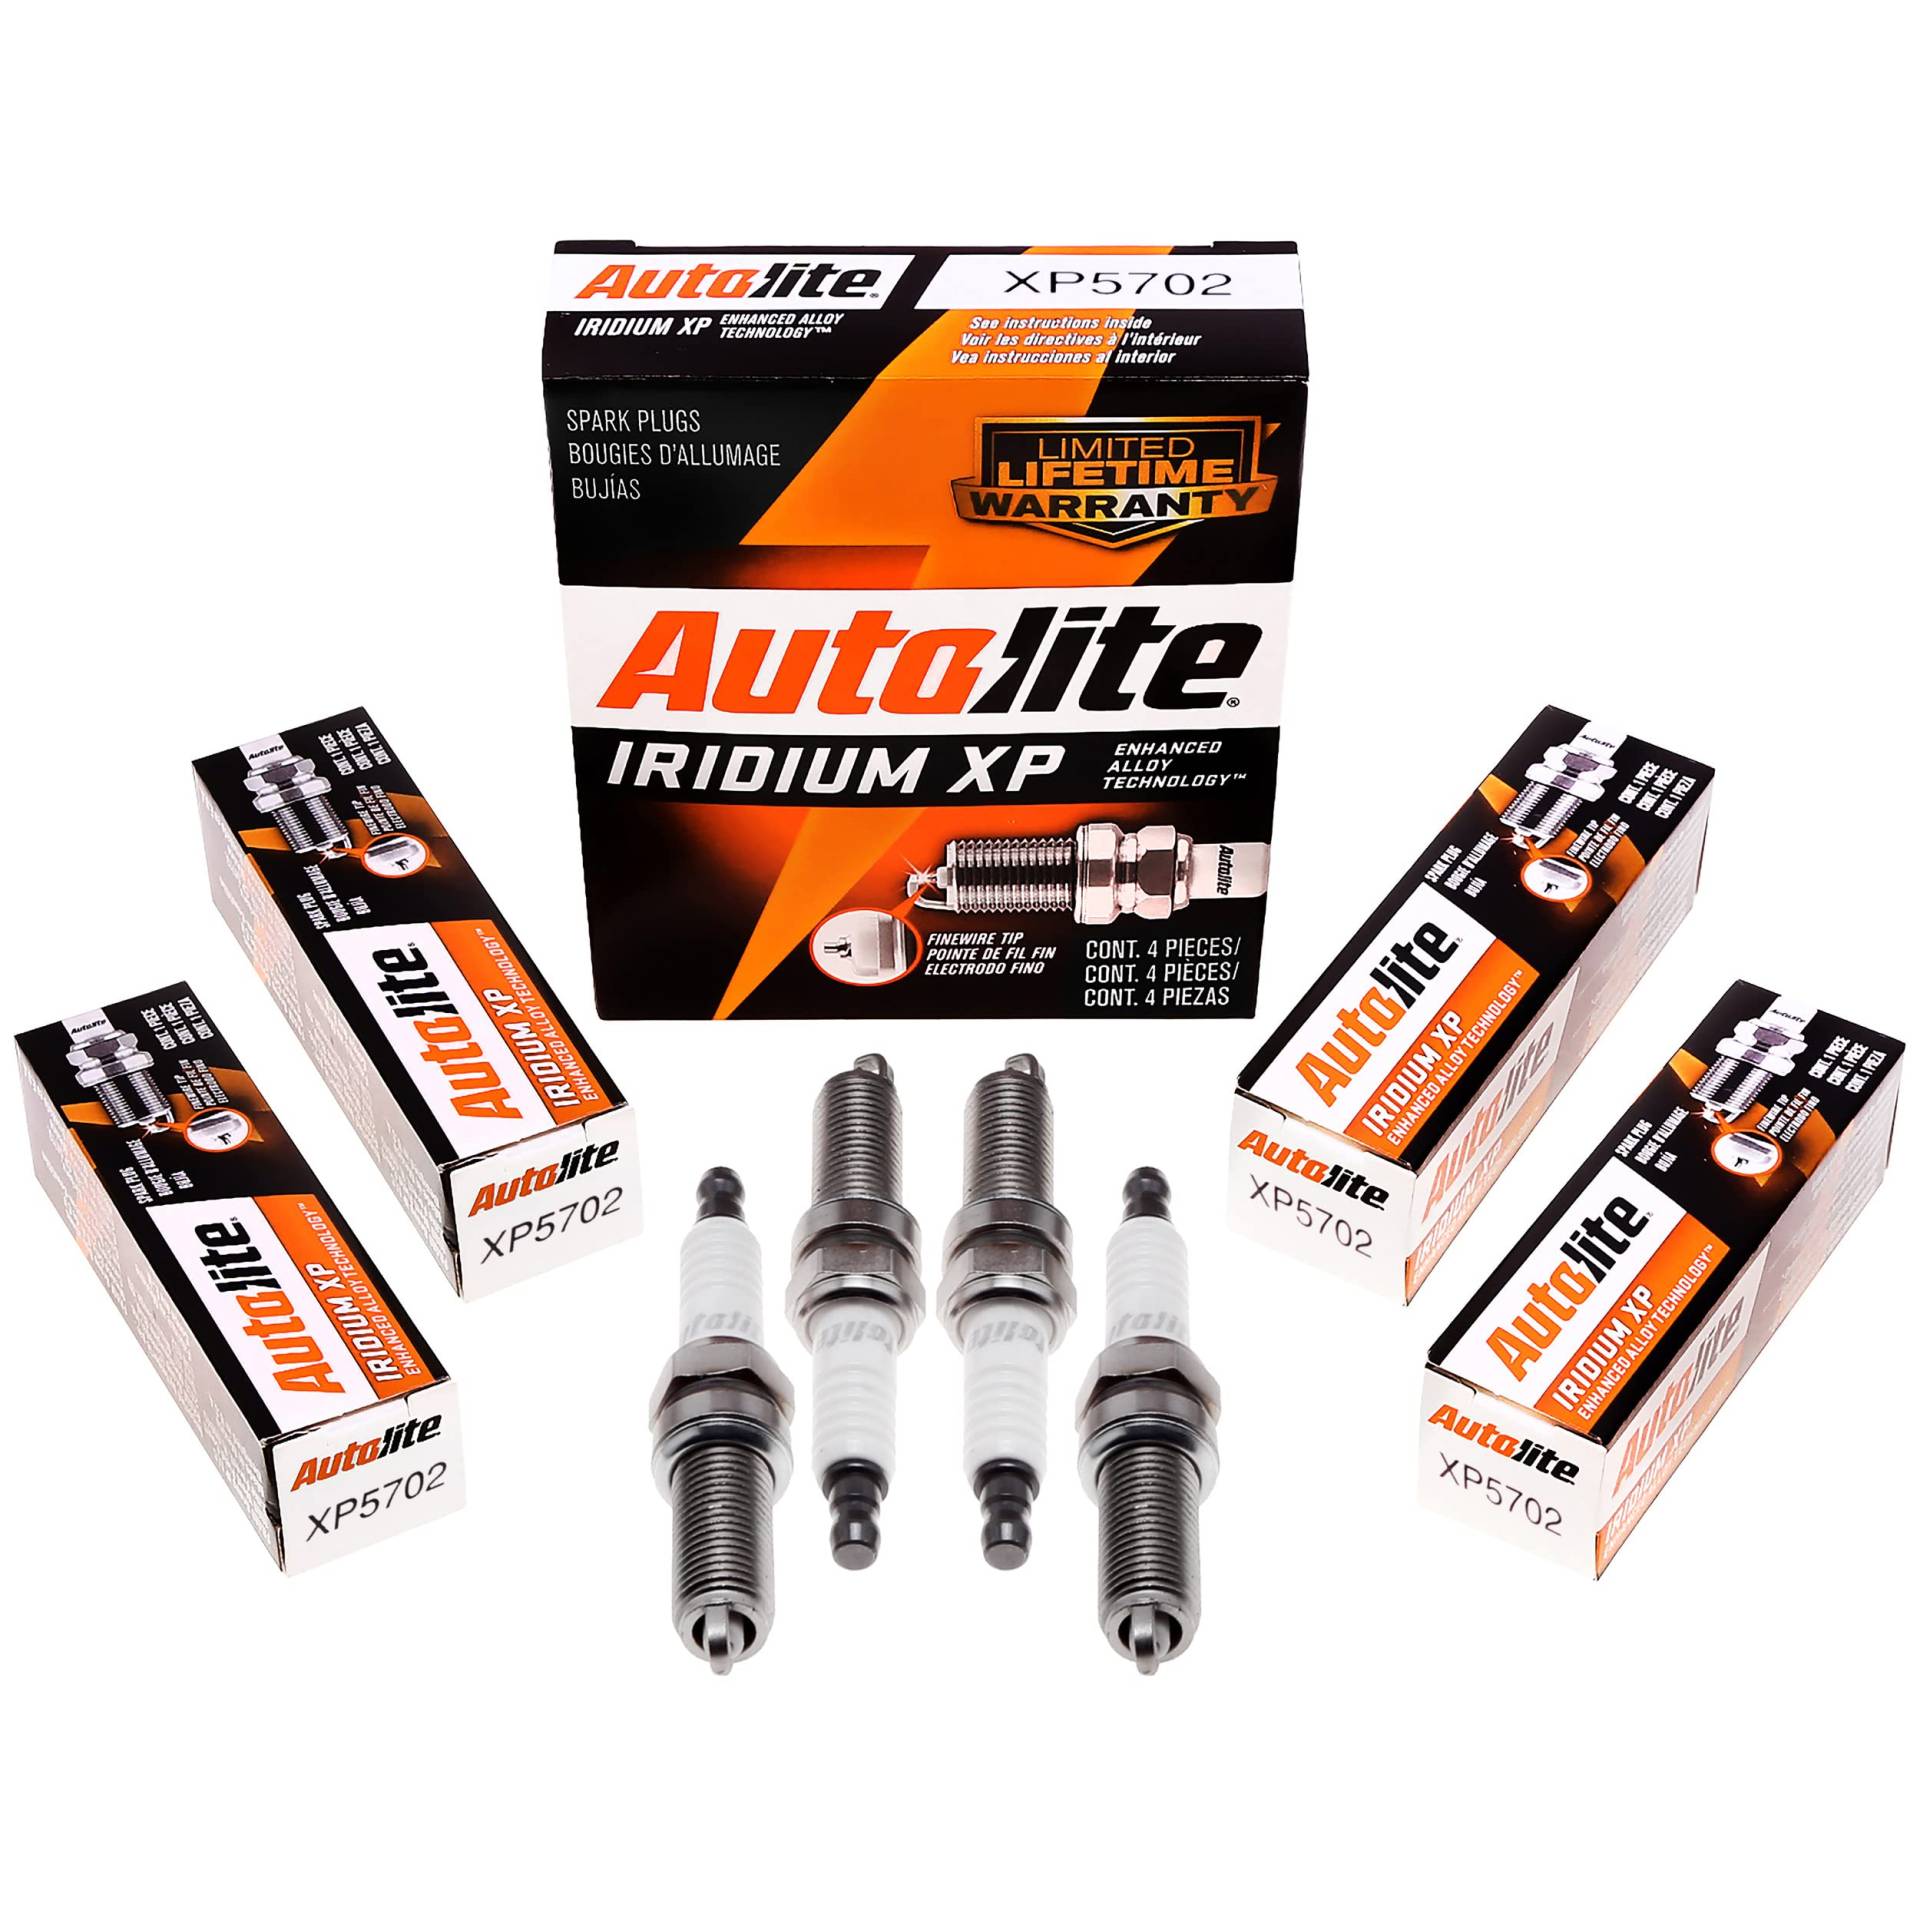 Autolite Iridium XP Automotive Ersatz-Zündkerzen, XP5702, 4 Stück von Autolite